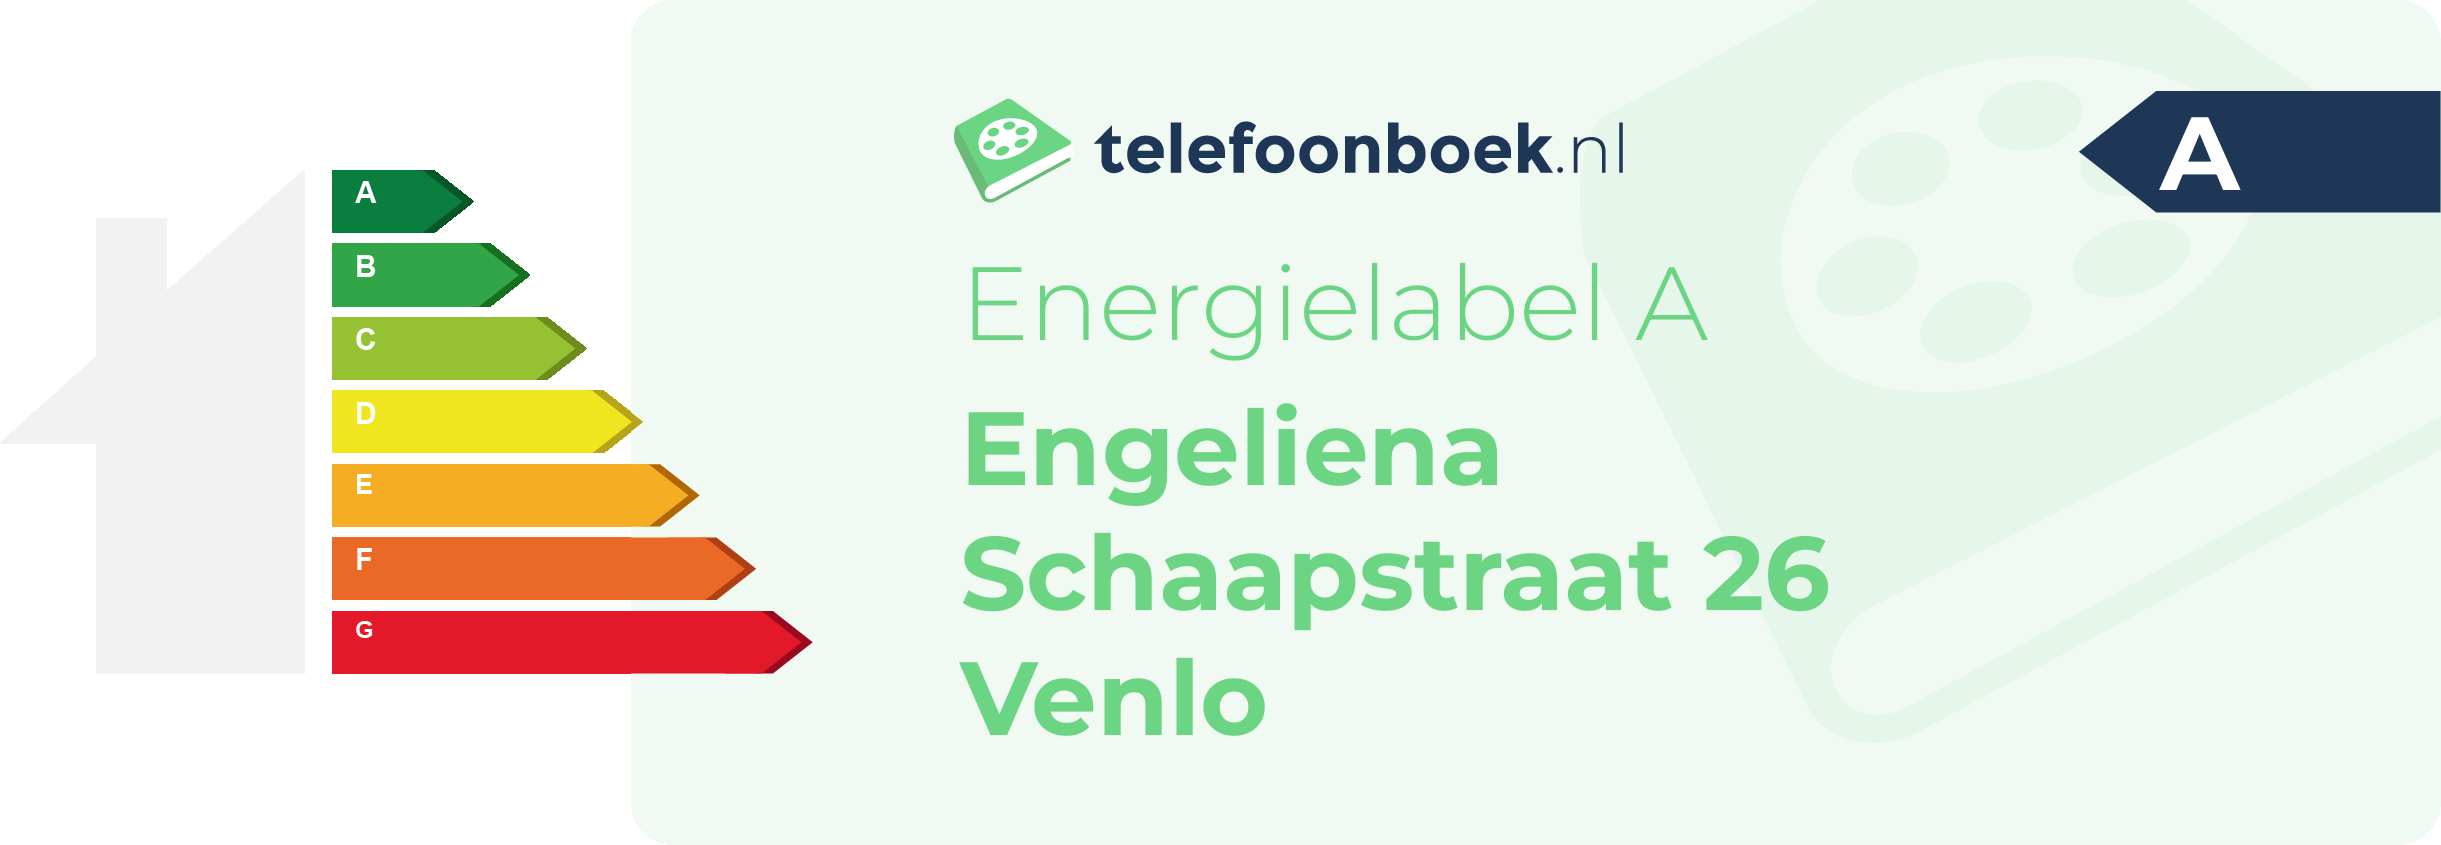 Energielabel Engeliena Schaapstraat 26 Venlo